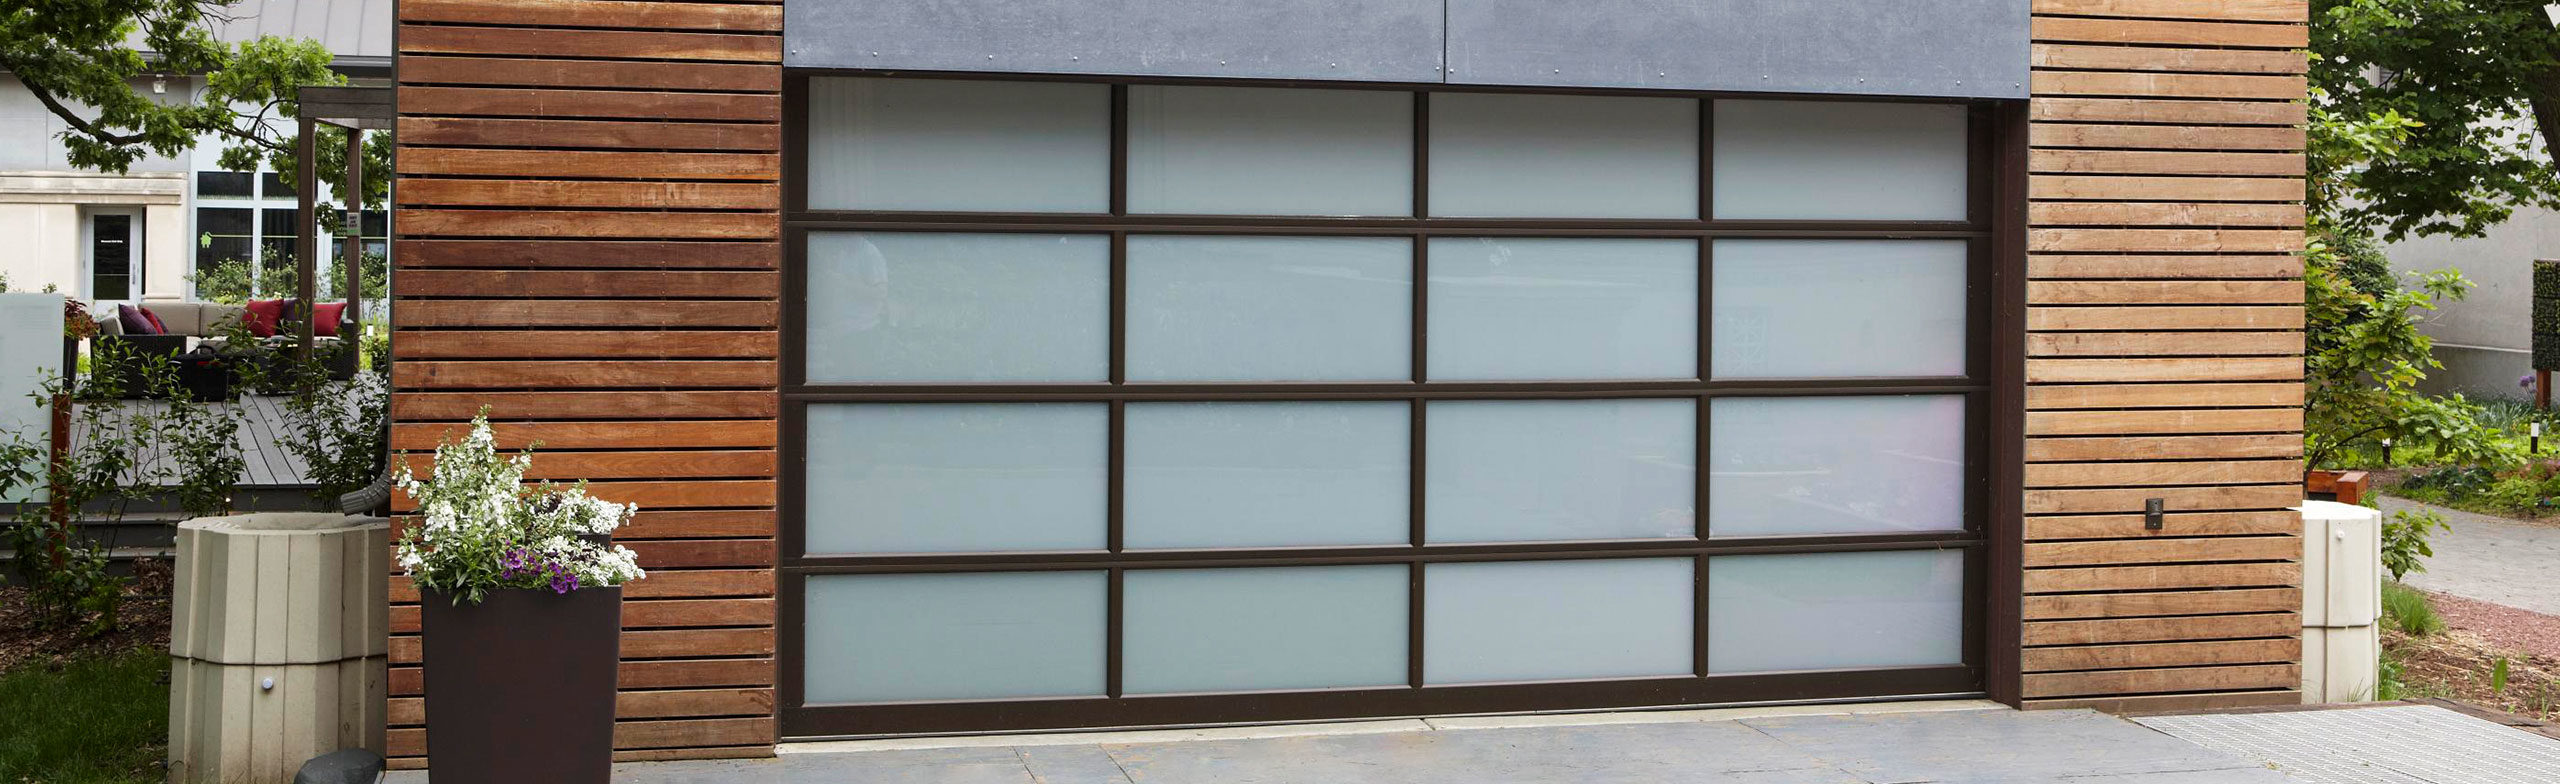 Impact Resistant Glass Garage Doors Available In Broward Palm Beach Counties Broten Garage Door Sales